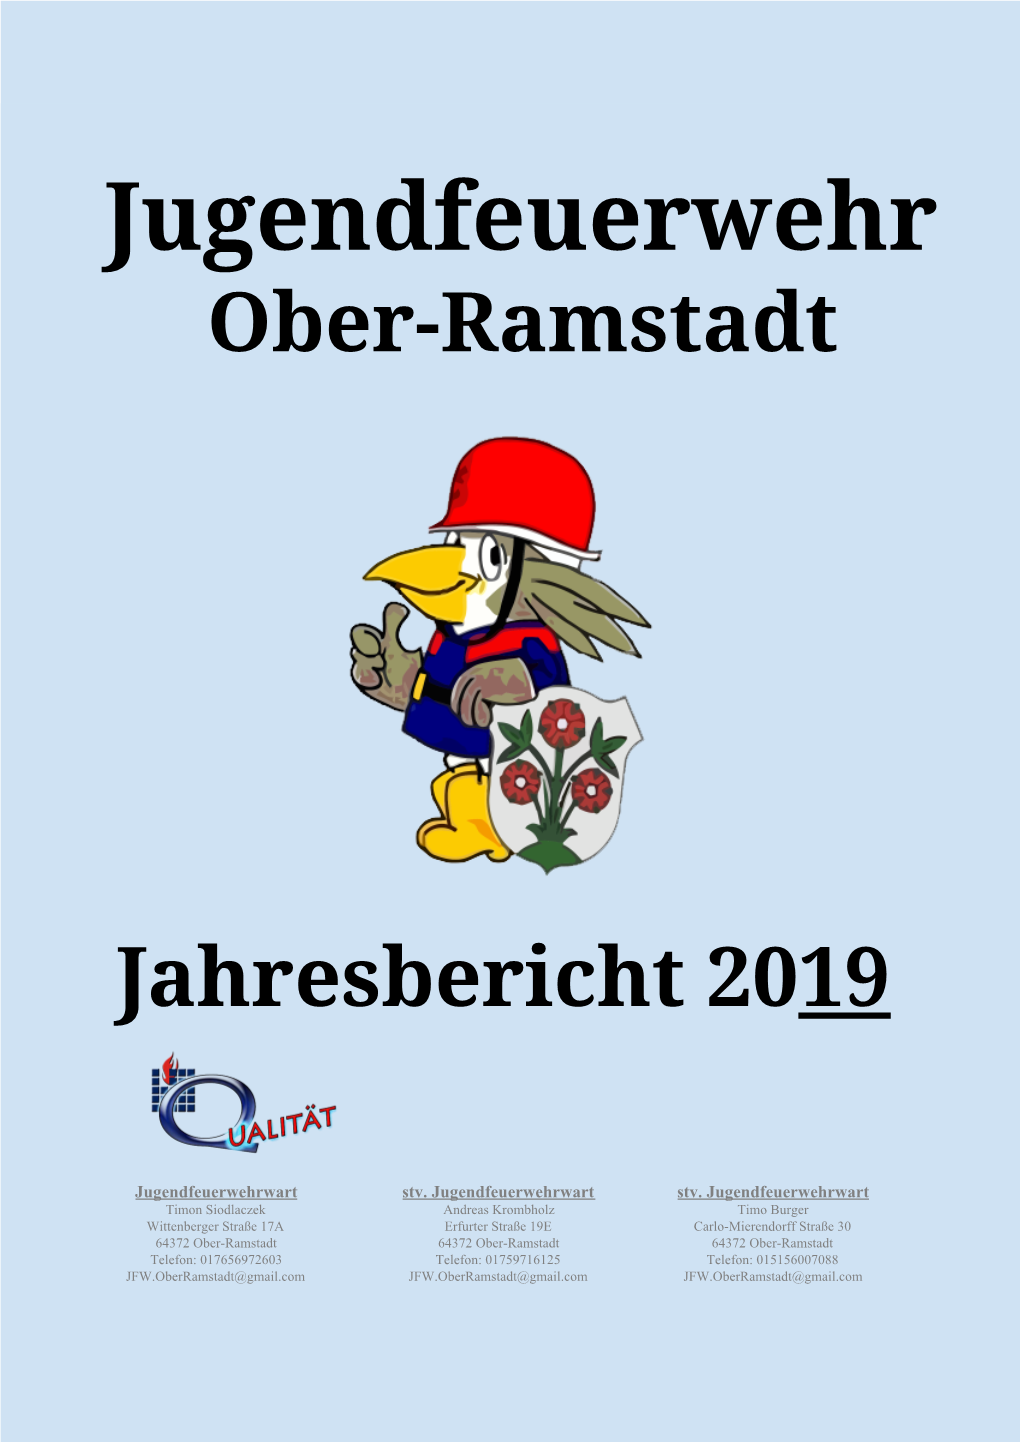 Jugendfeuerwehr Ober-Ramstadt